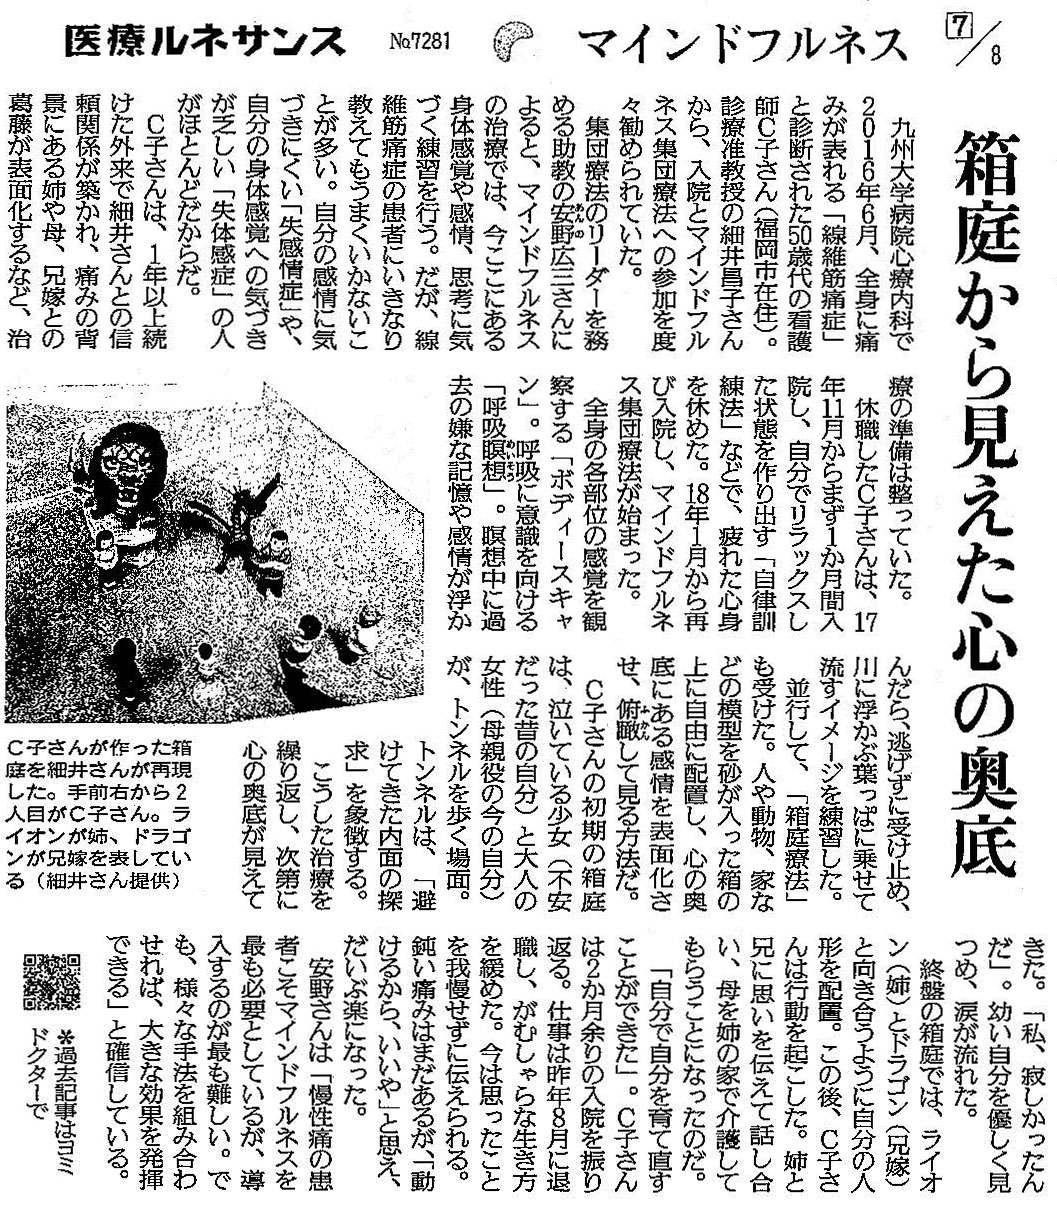 読売新聞 2020年5月13日 掲載記事